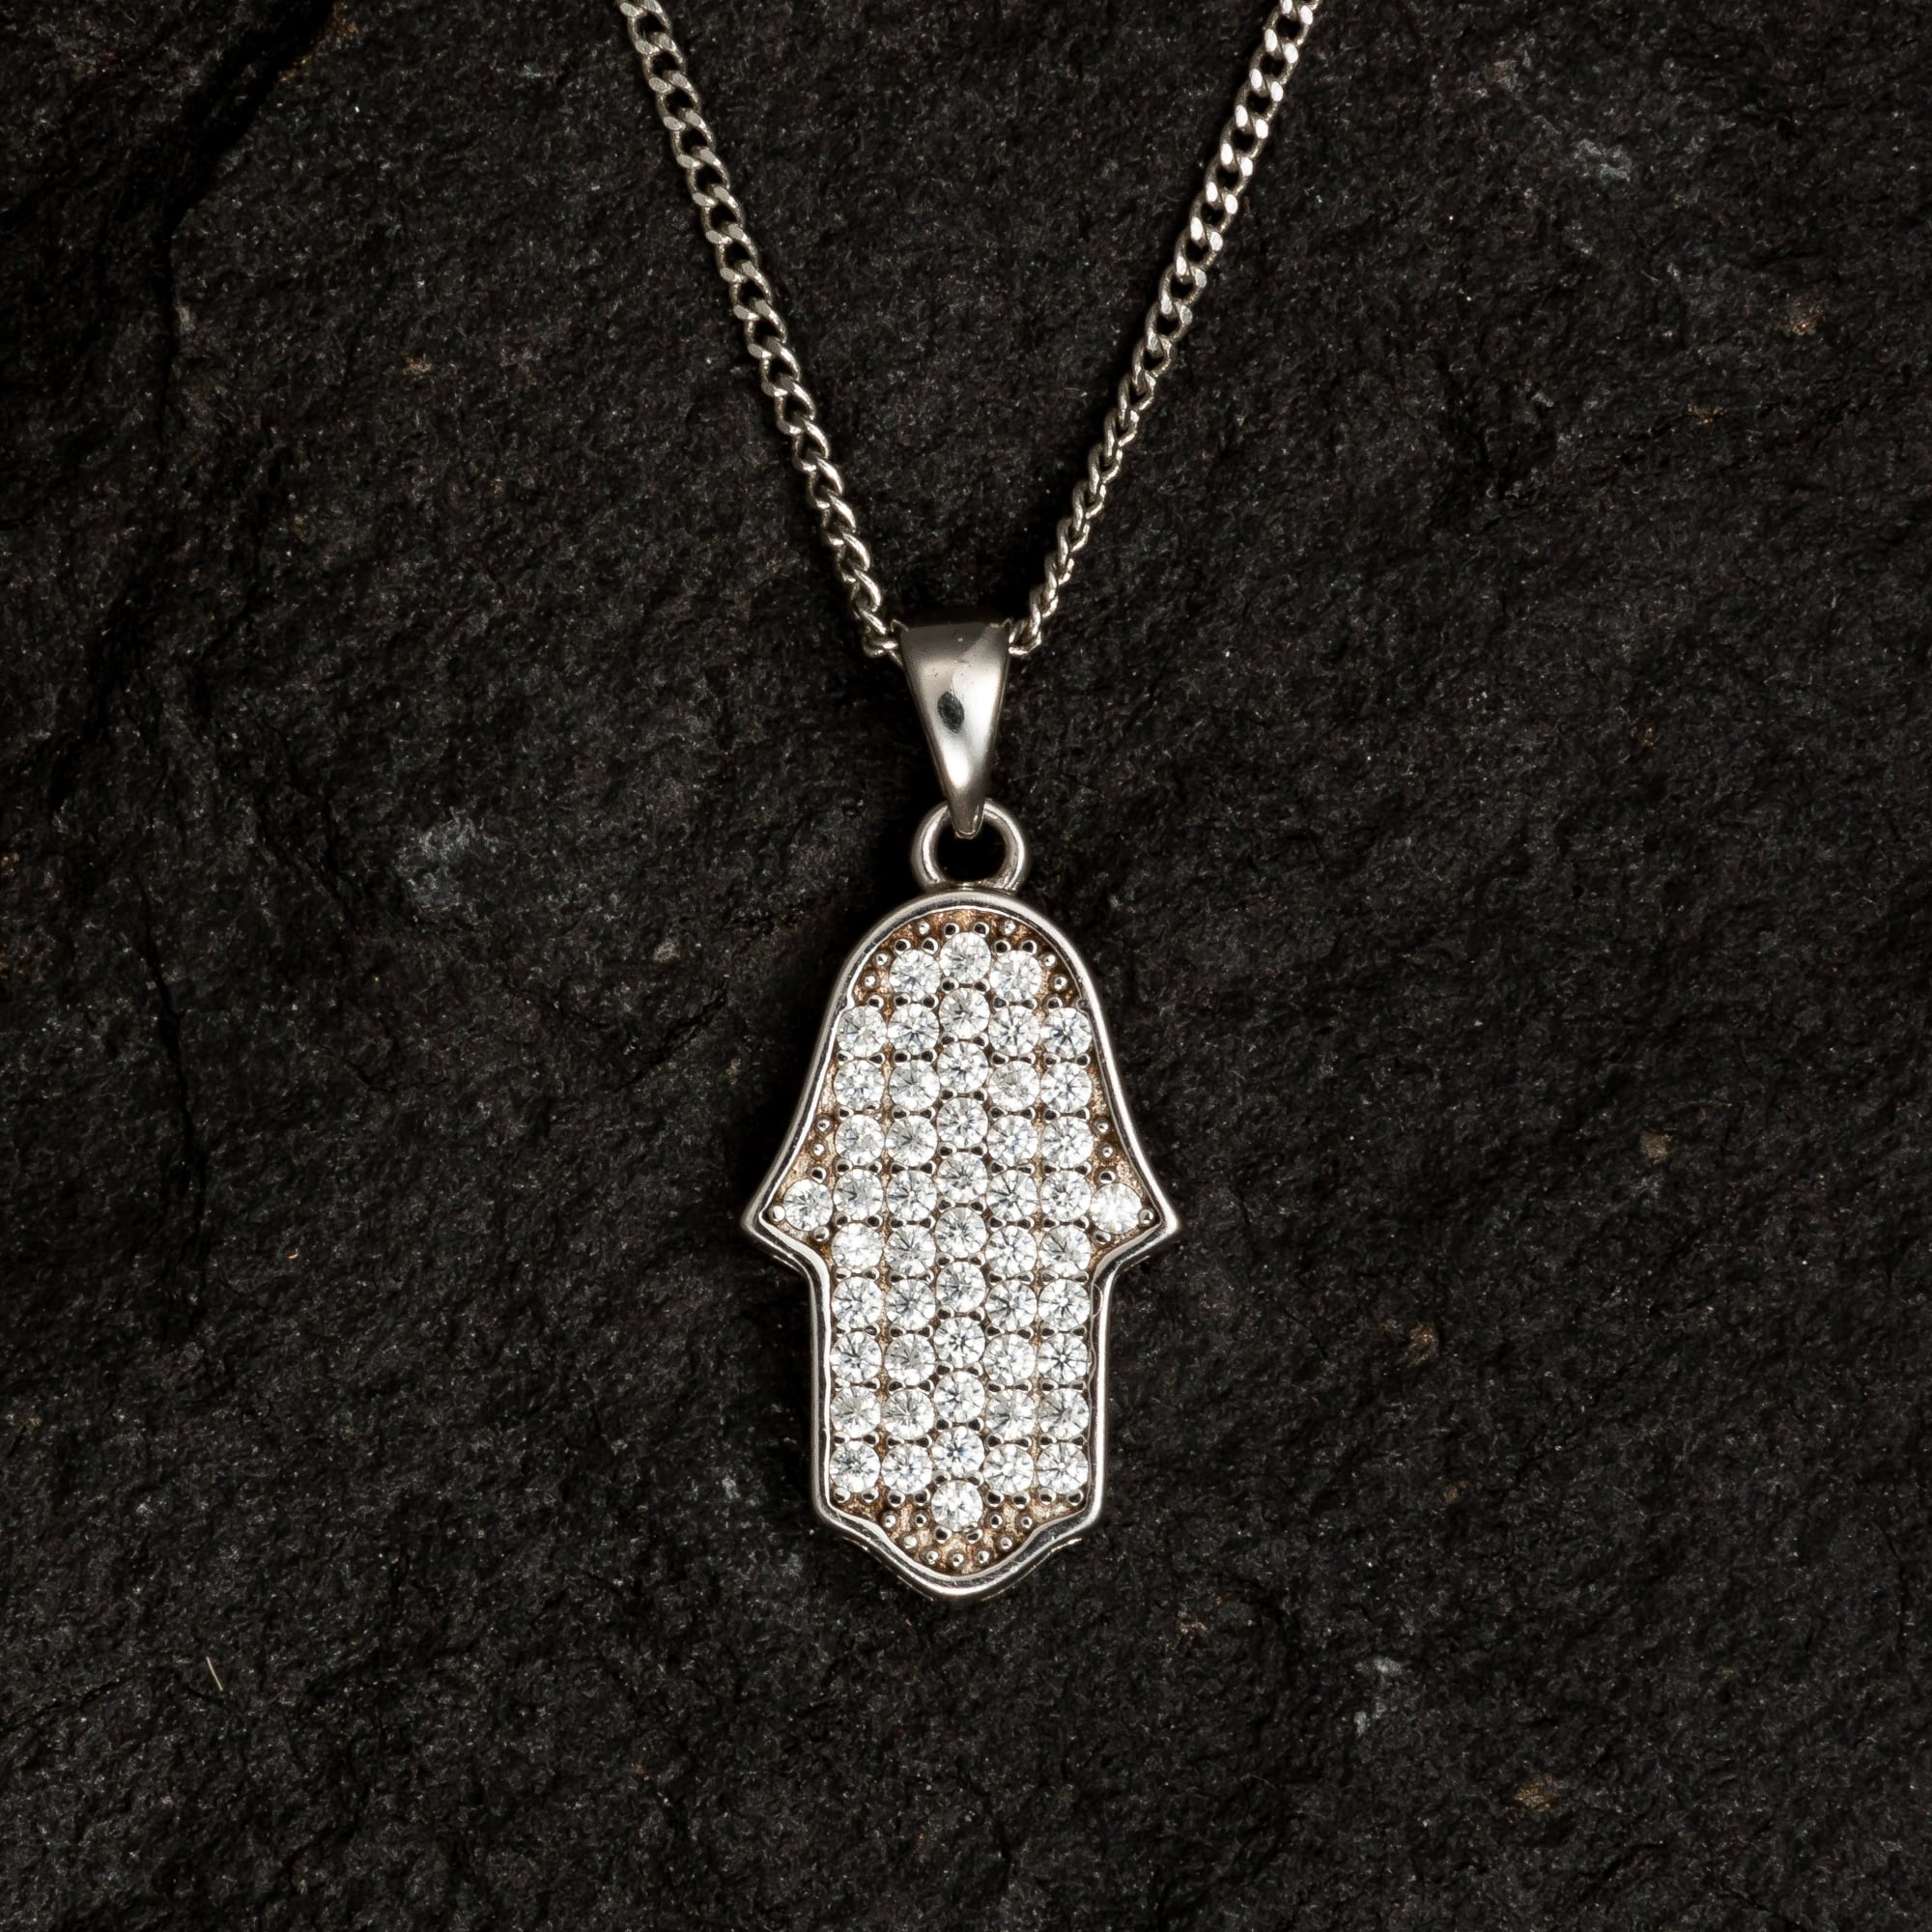 Minimalist Hamsa Necklace with Gemstones - Necklaces